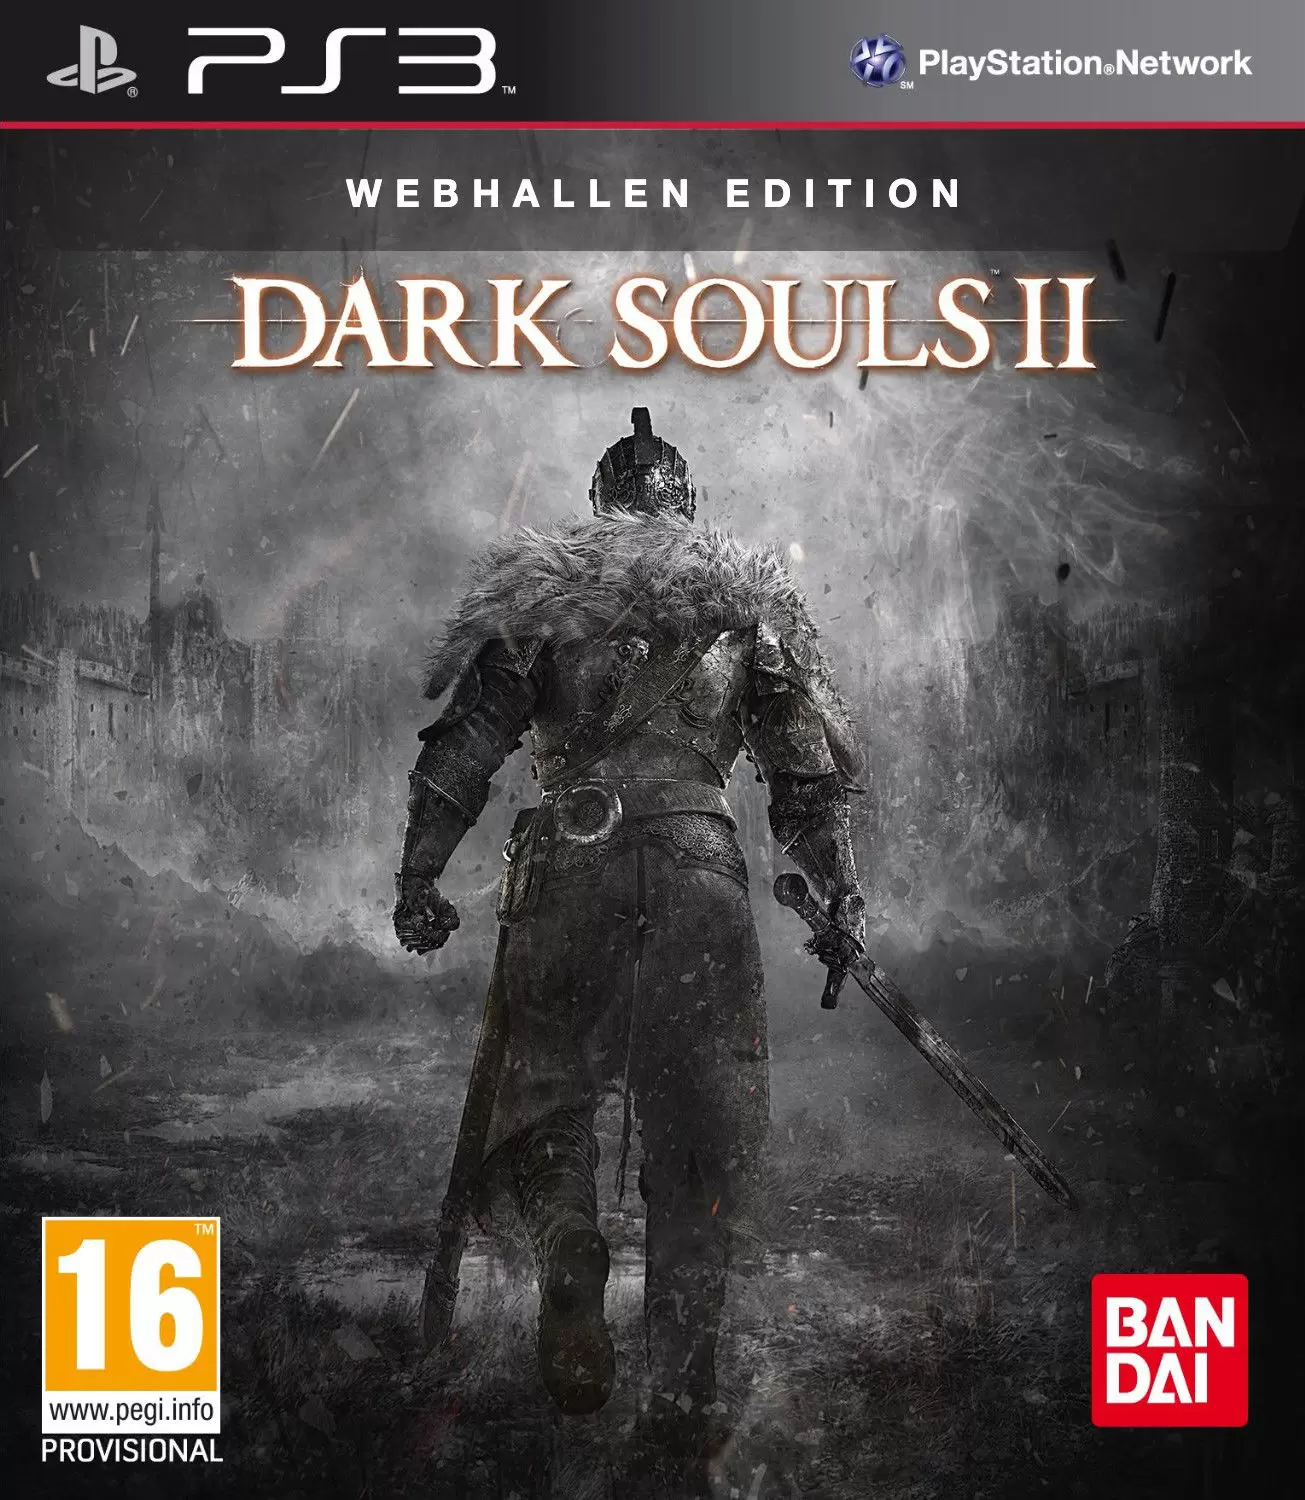 PS3 Games - Dark Souls II Webhallen Edition